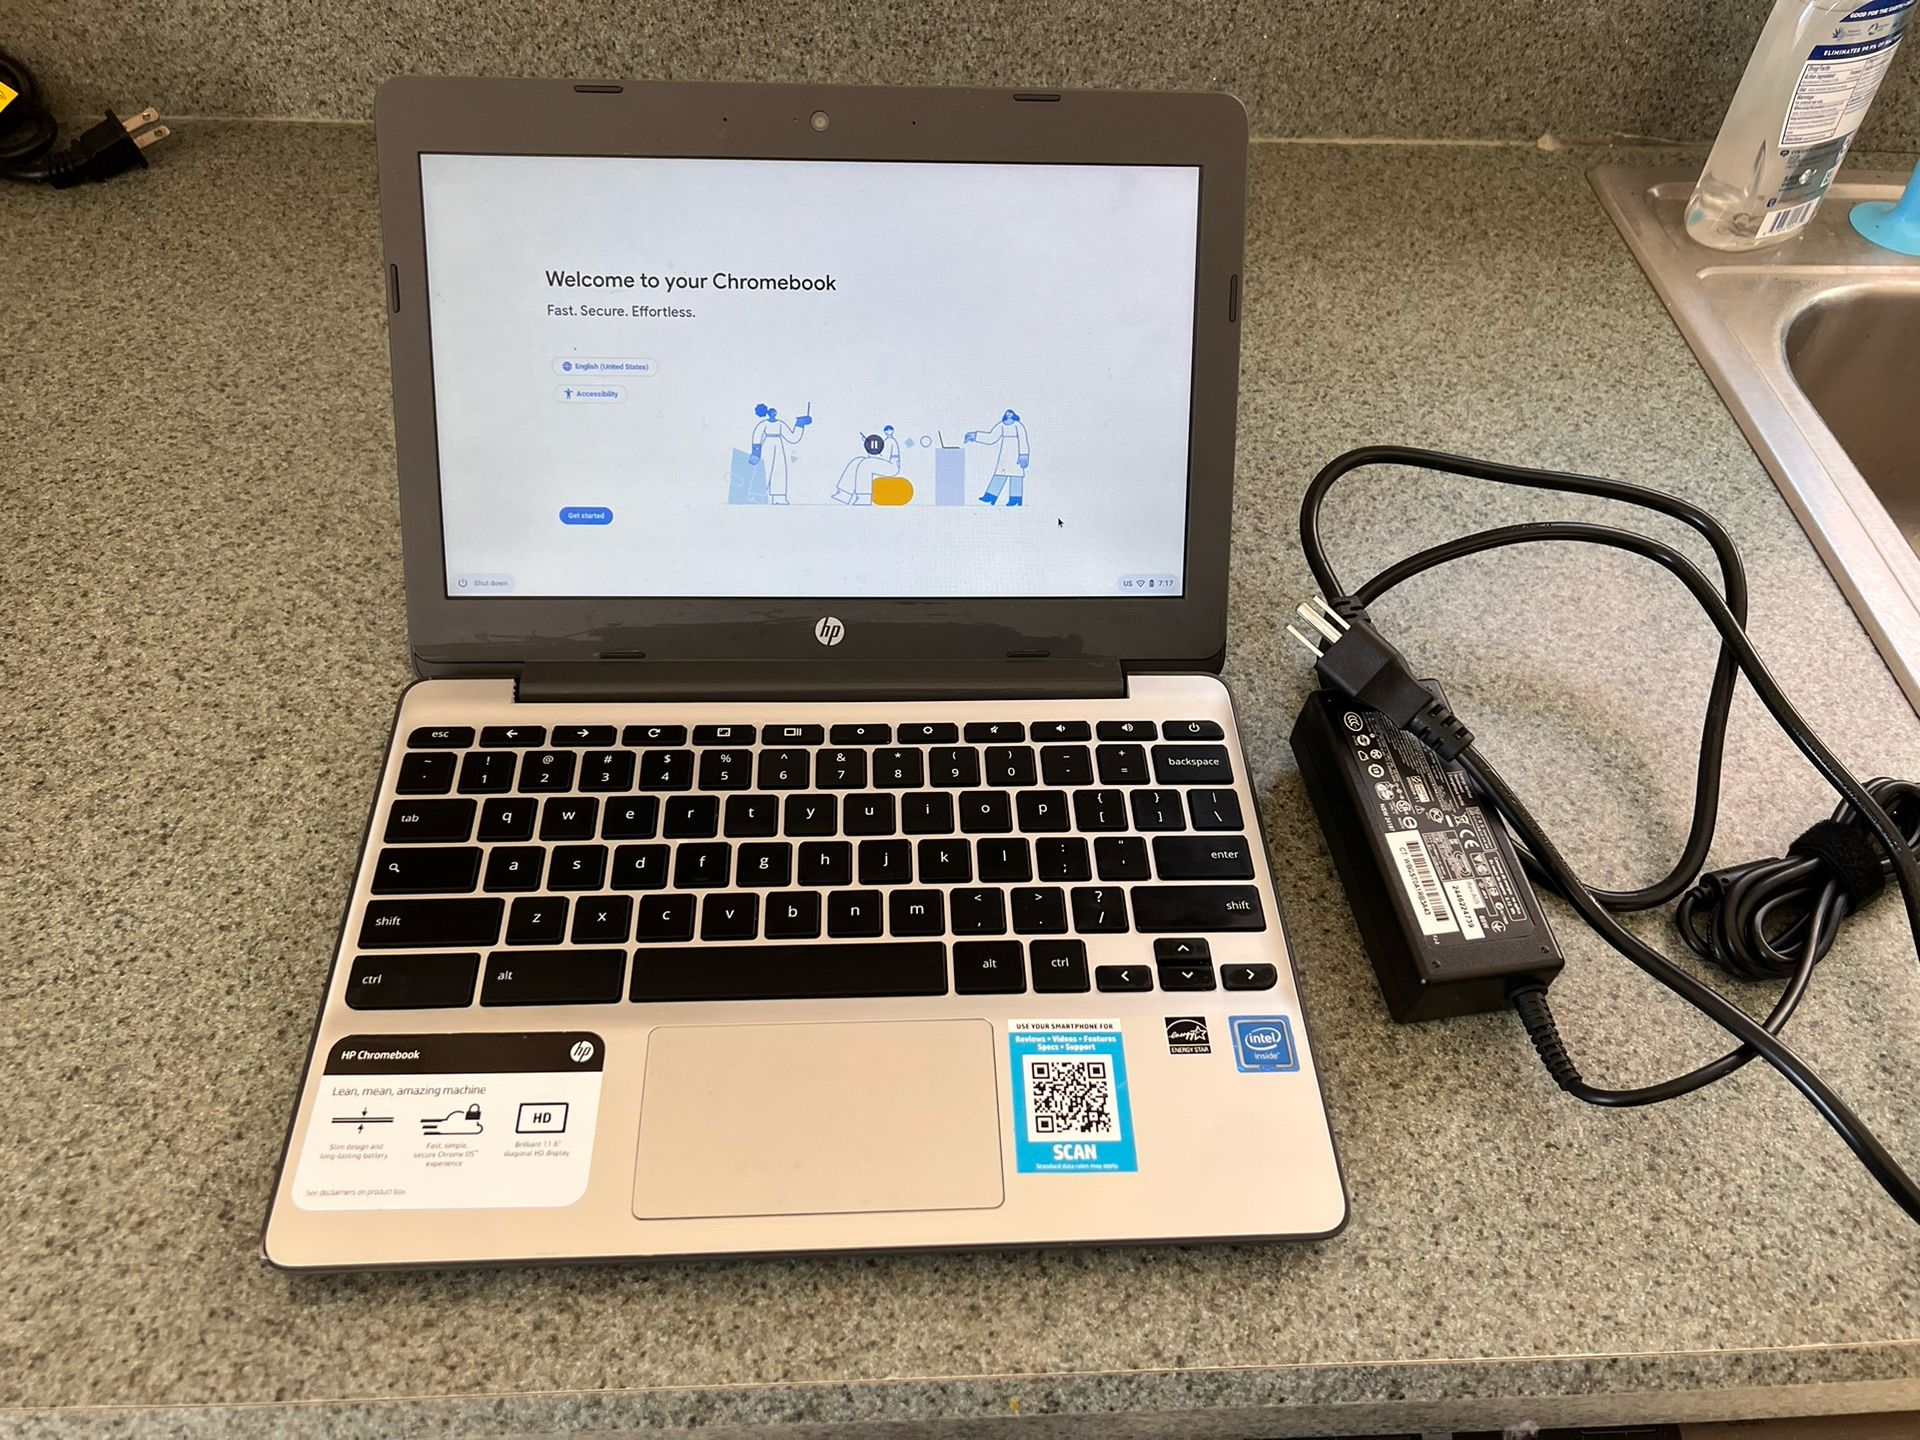 HP Chromebook 11 v010nr 11.6in